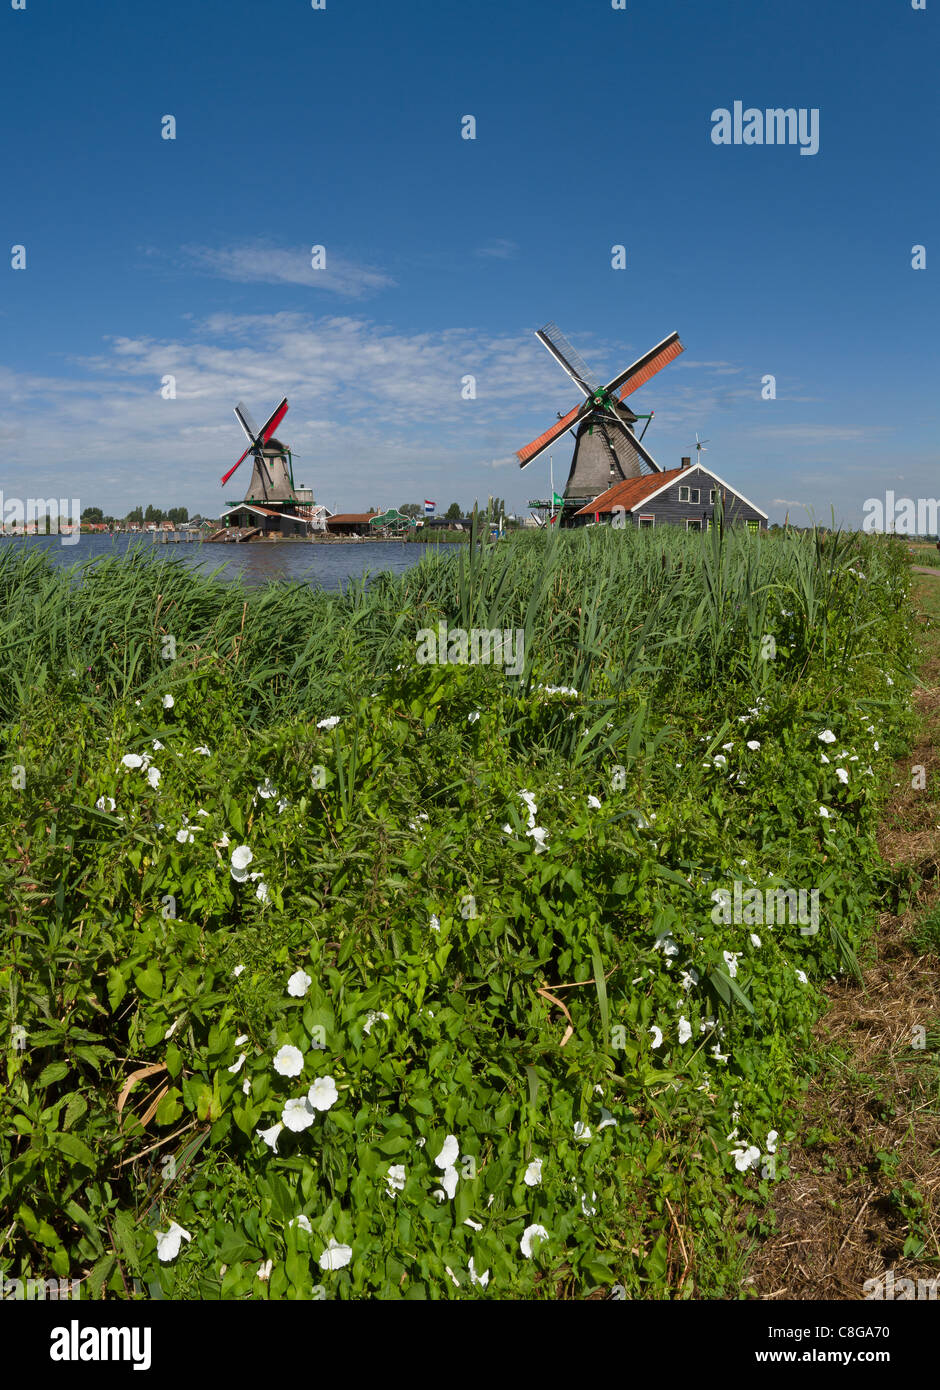 Netherlands, Europe, Holland, Zaandam, Windmills, open air, museum Zaanse Schans, windmill, flowers, summer, Stock Photo